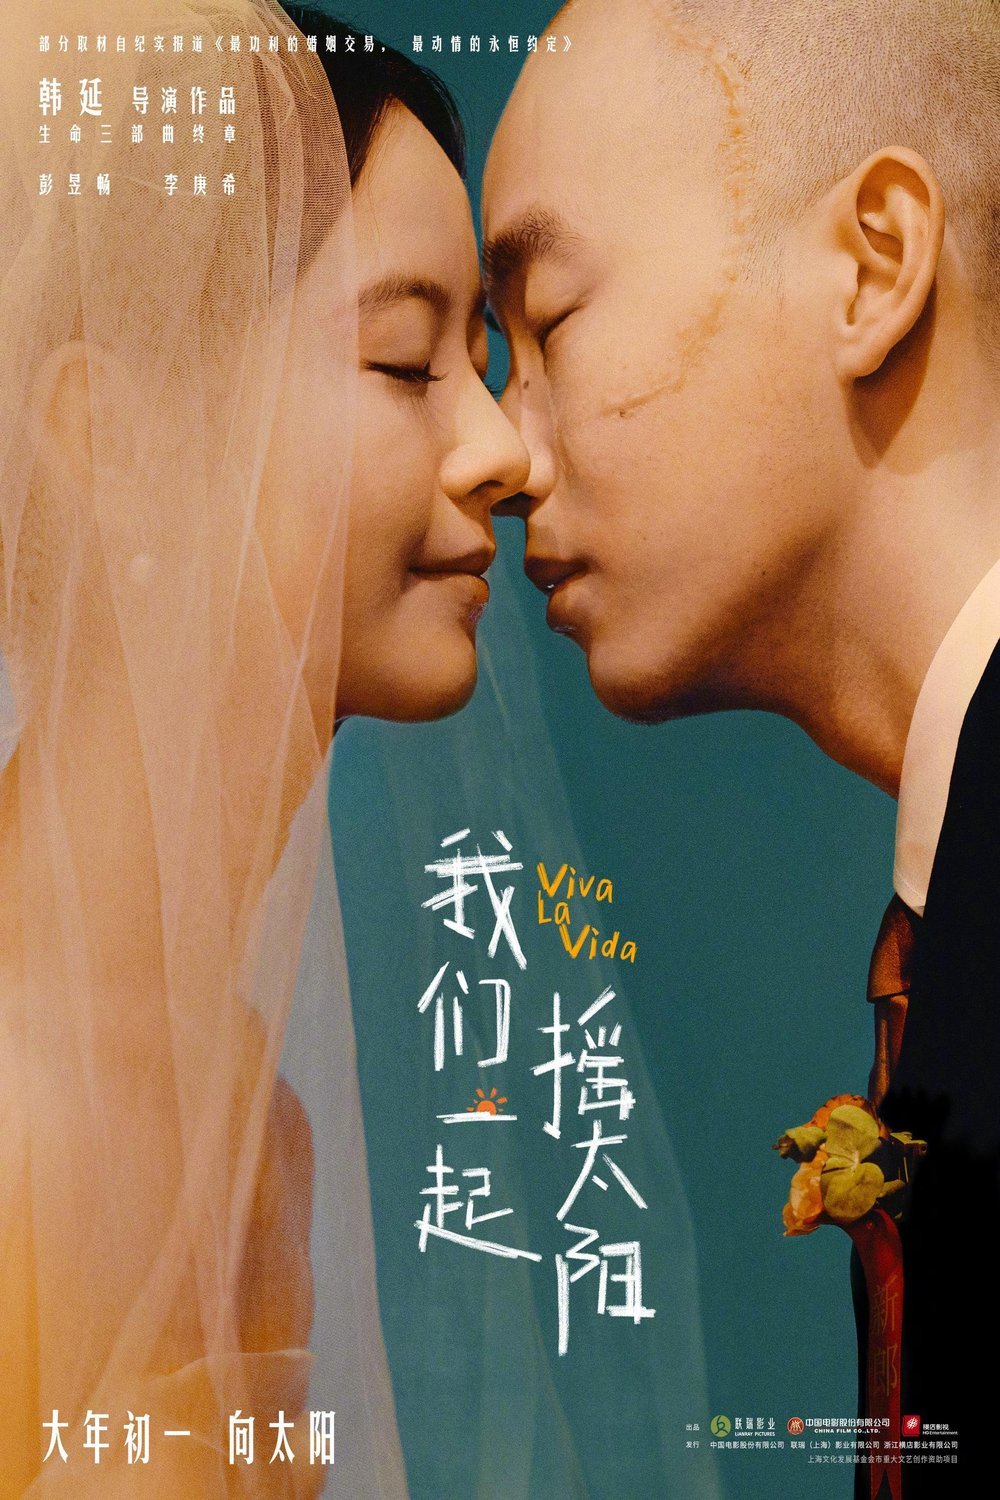 Chinese poster of the movie Wo men yi qi yao tai yang